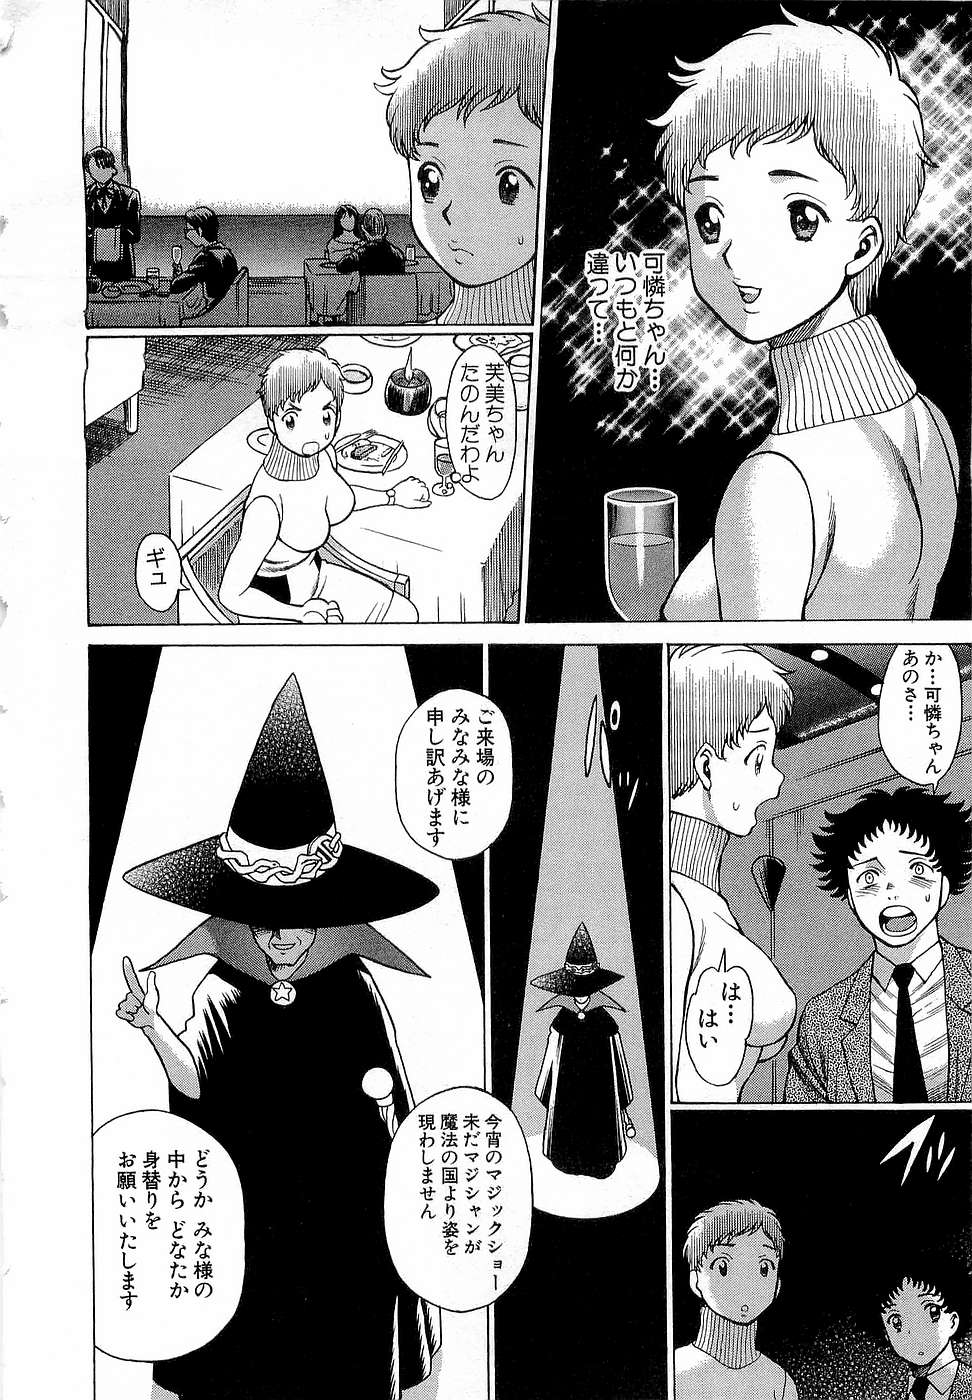 [Tamaki Nozomu] Nanairo Karen x3 Cosplay Complex page 17 full